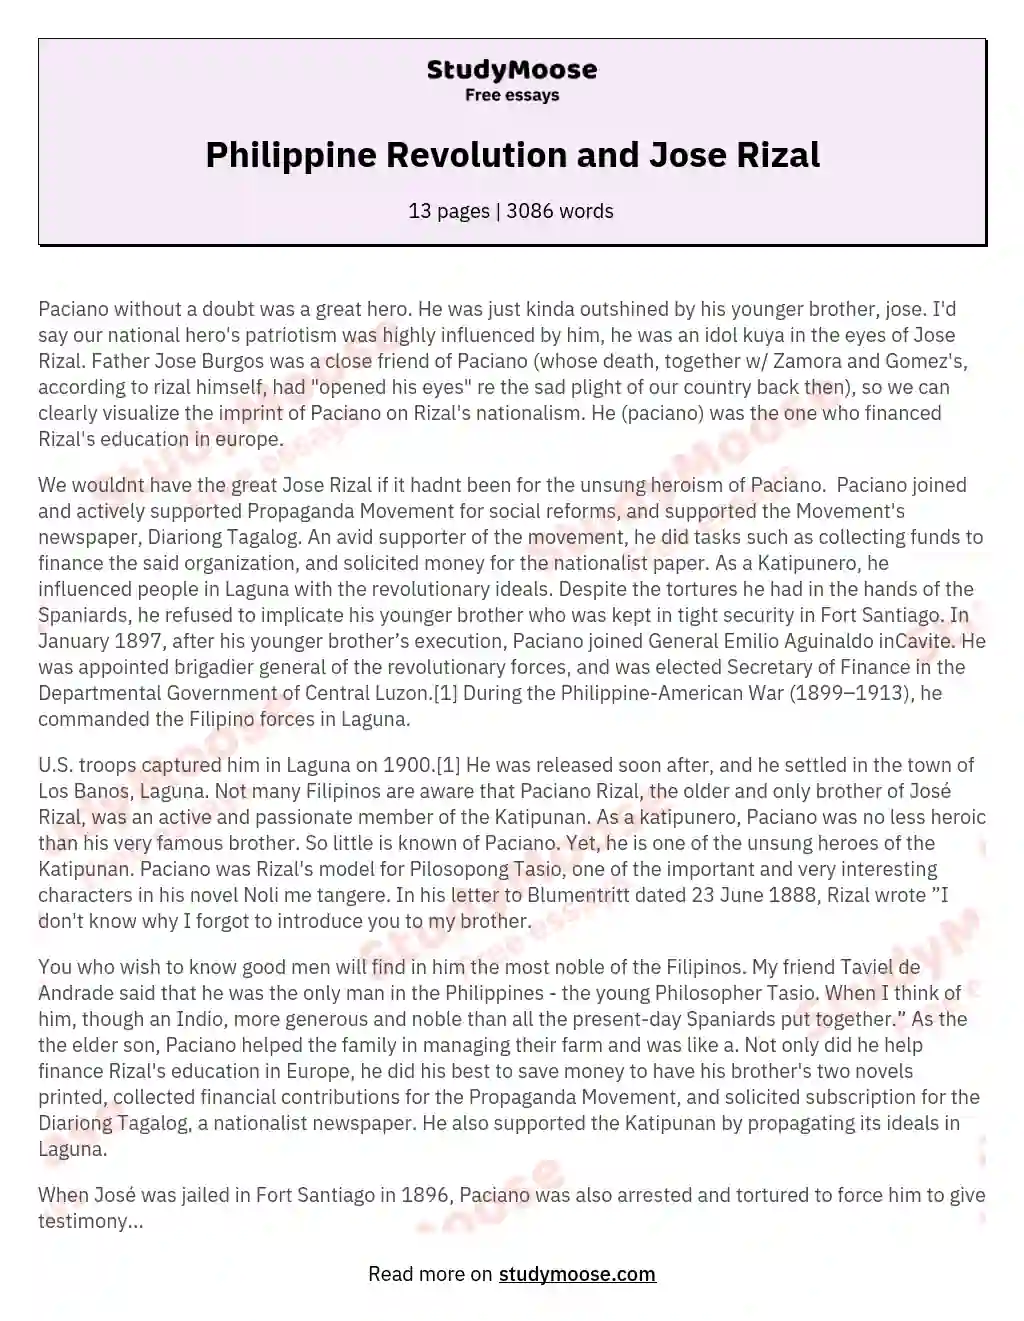 short essay about philippine revolution